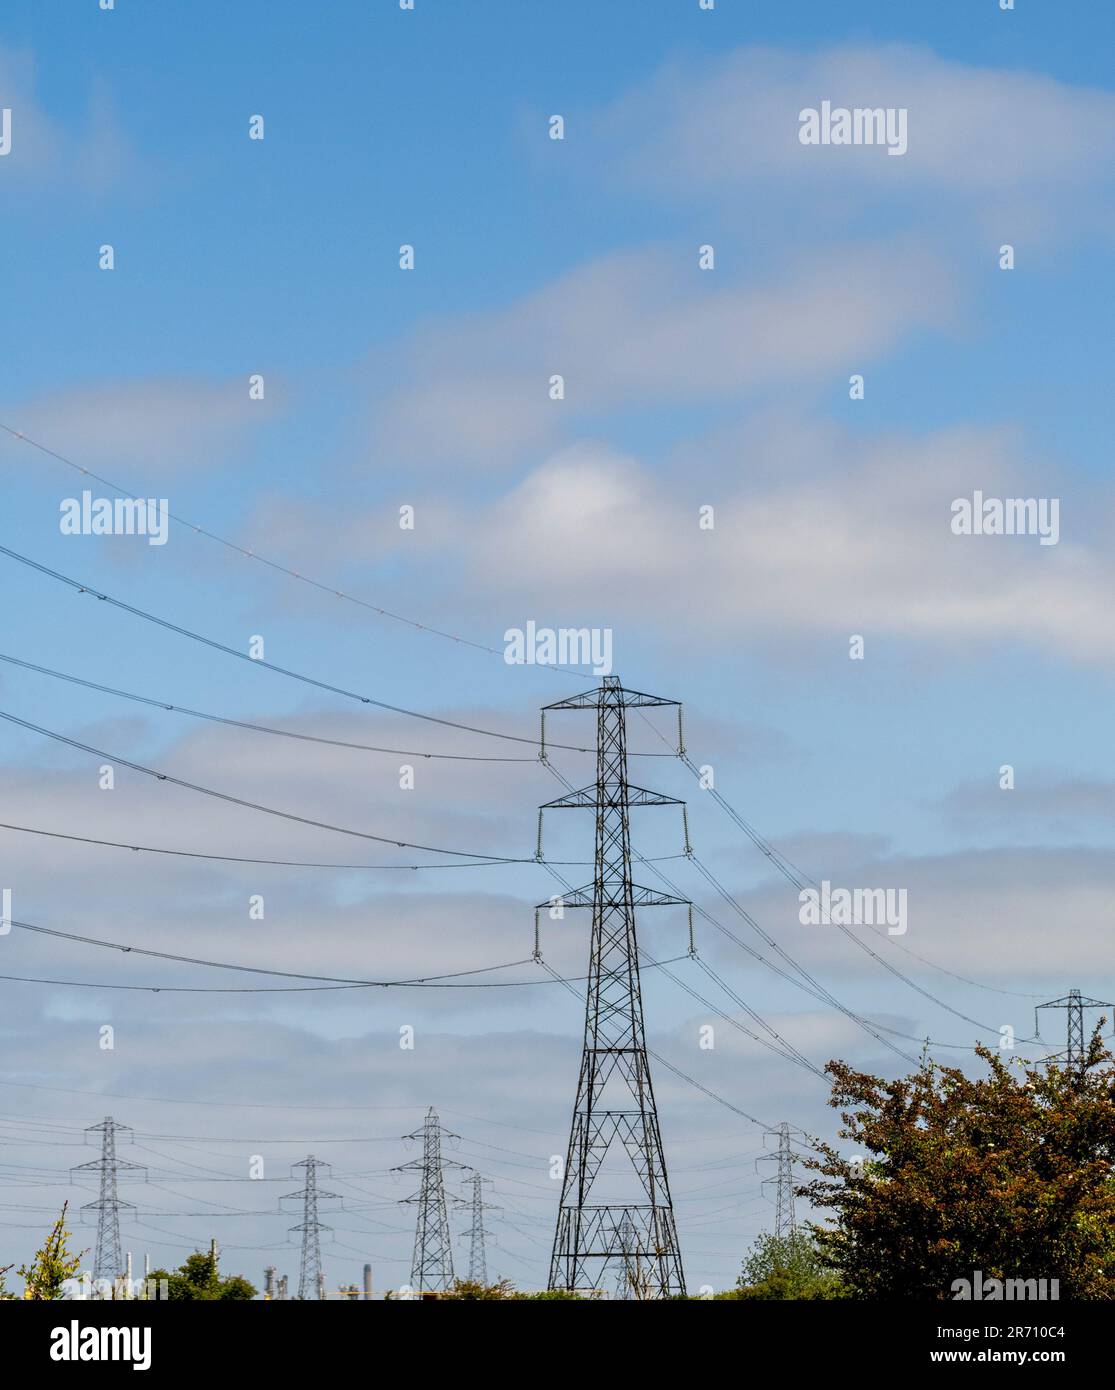 Strommasten und Überlandleitungen im Umspannwerk National Grid Salthome in Stockton-on-Tees, vor blauem Himmel gesehen. UK. Stockfoto